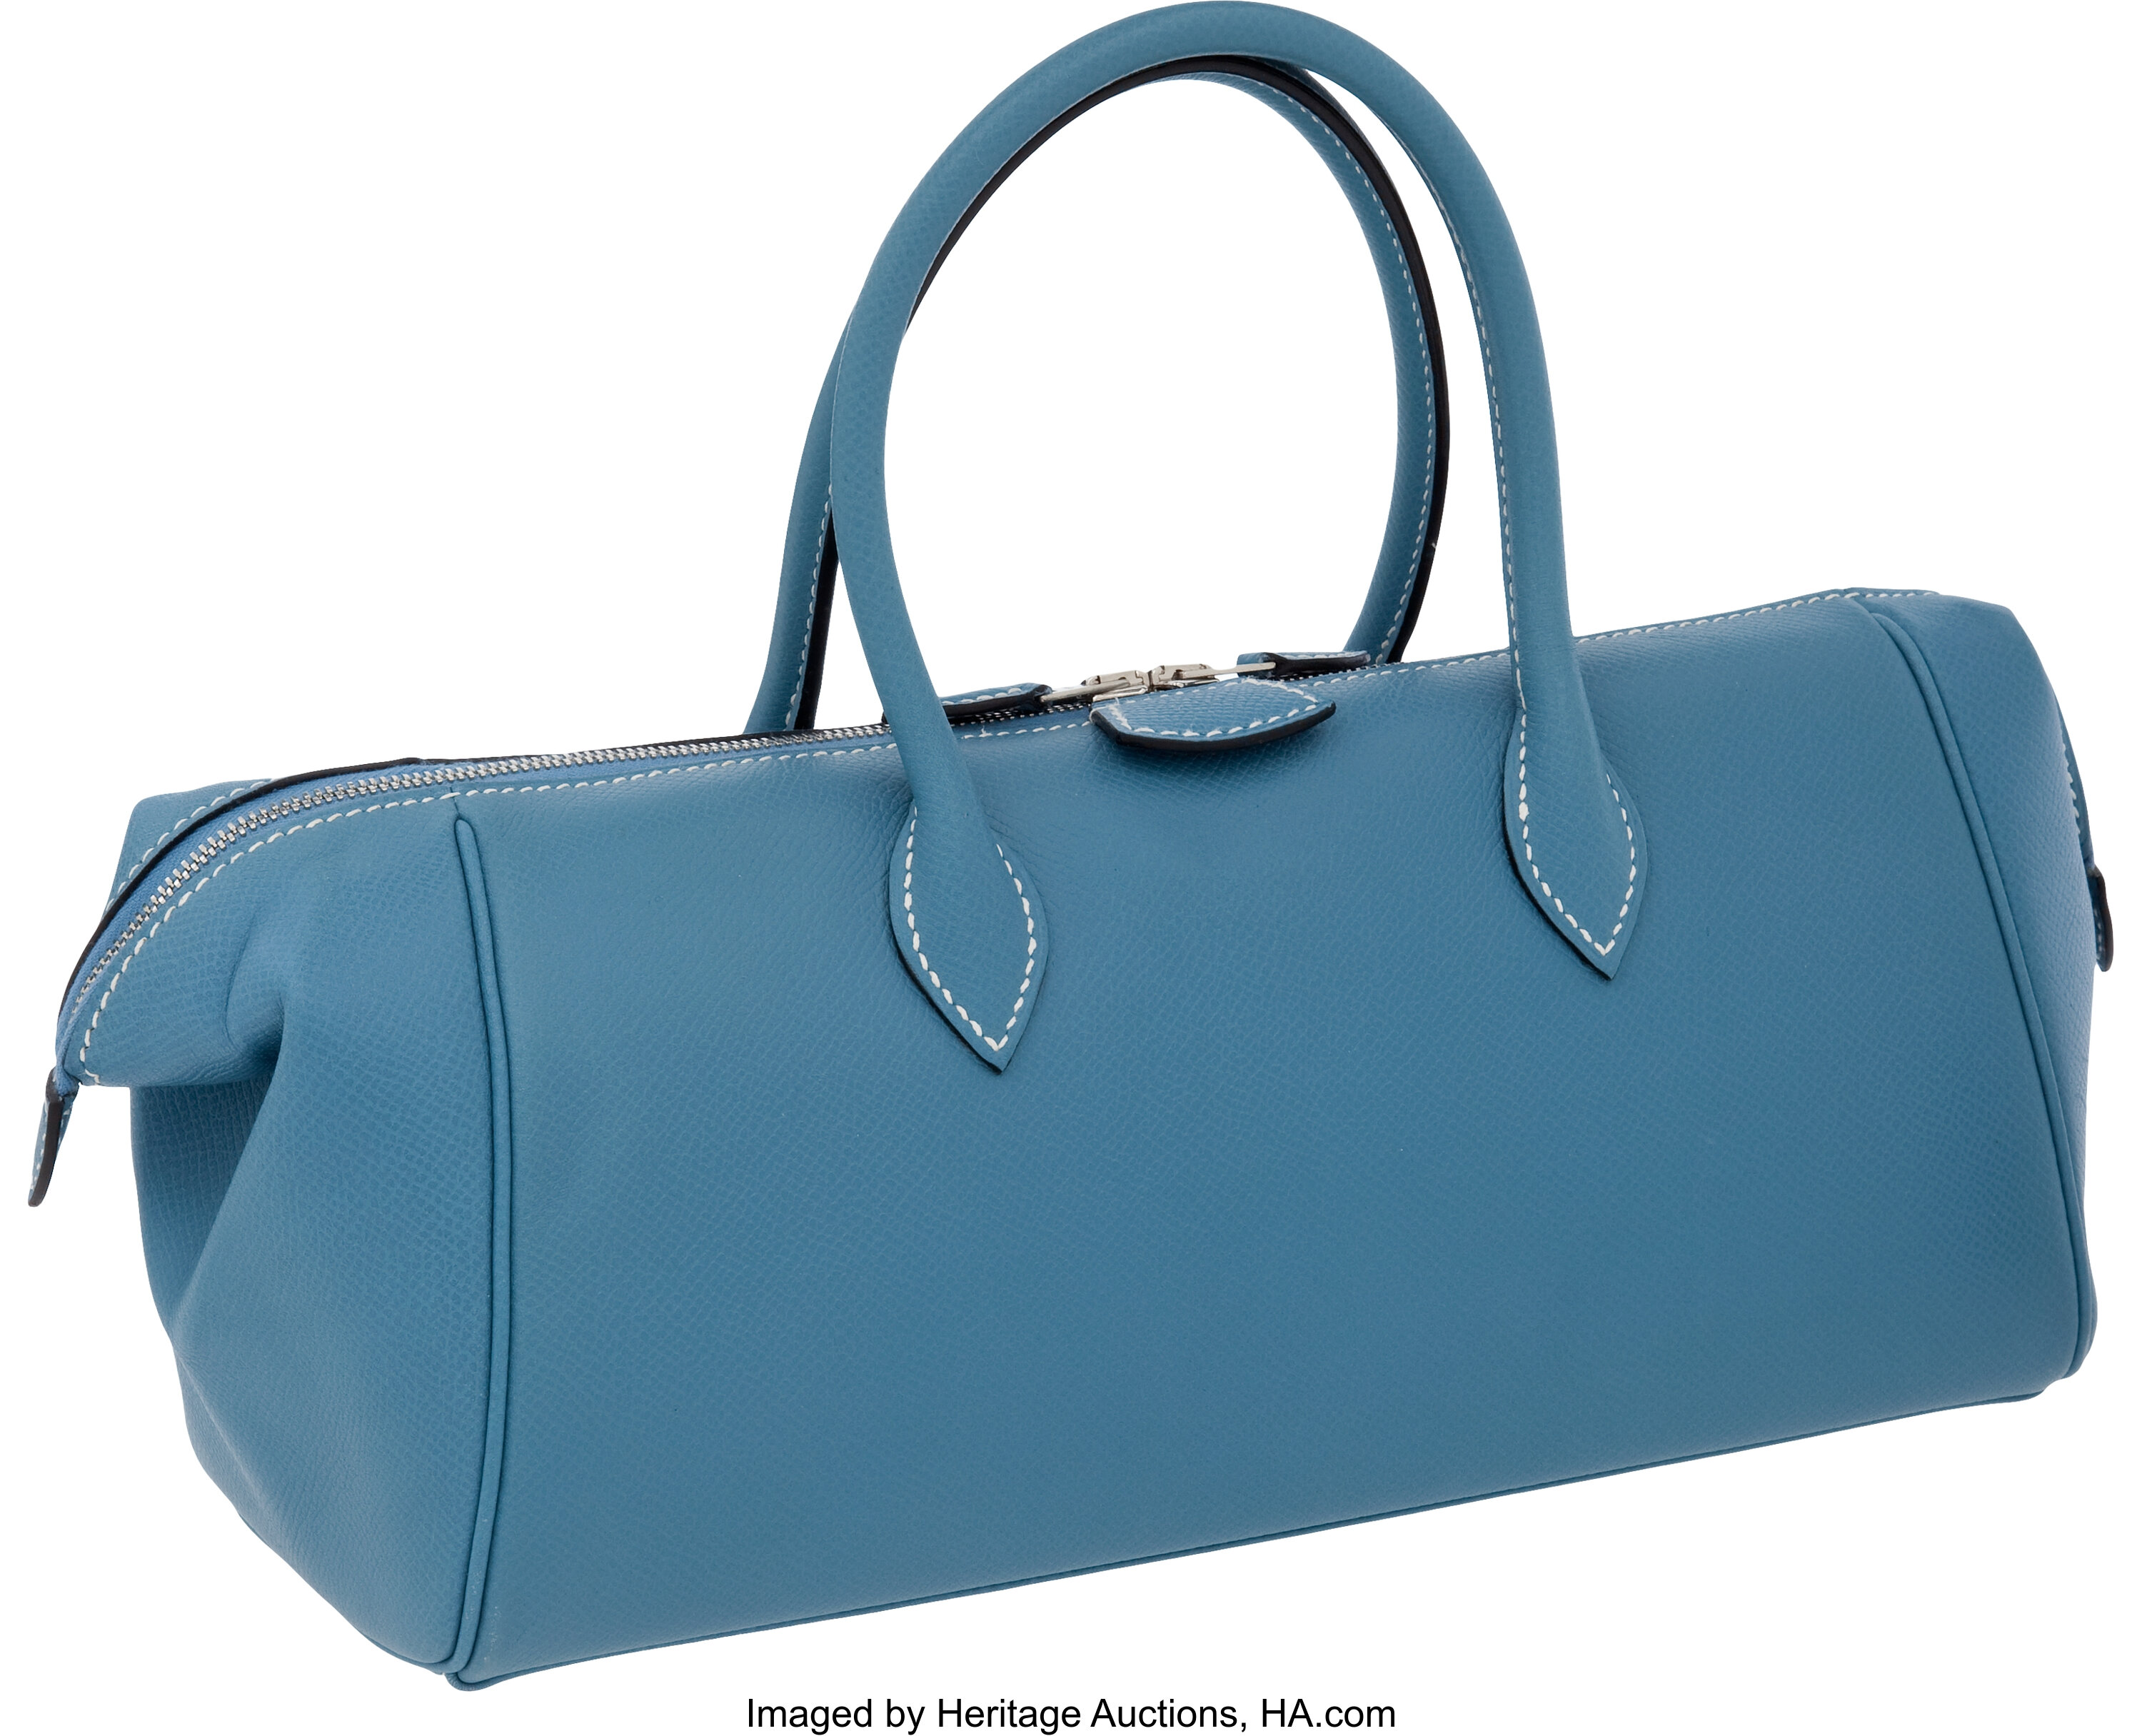 Hermes Paris Bombay Teal Blue Leather Bag Auction